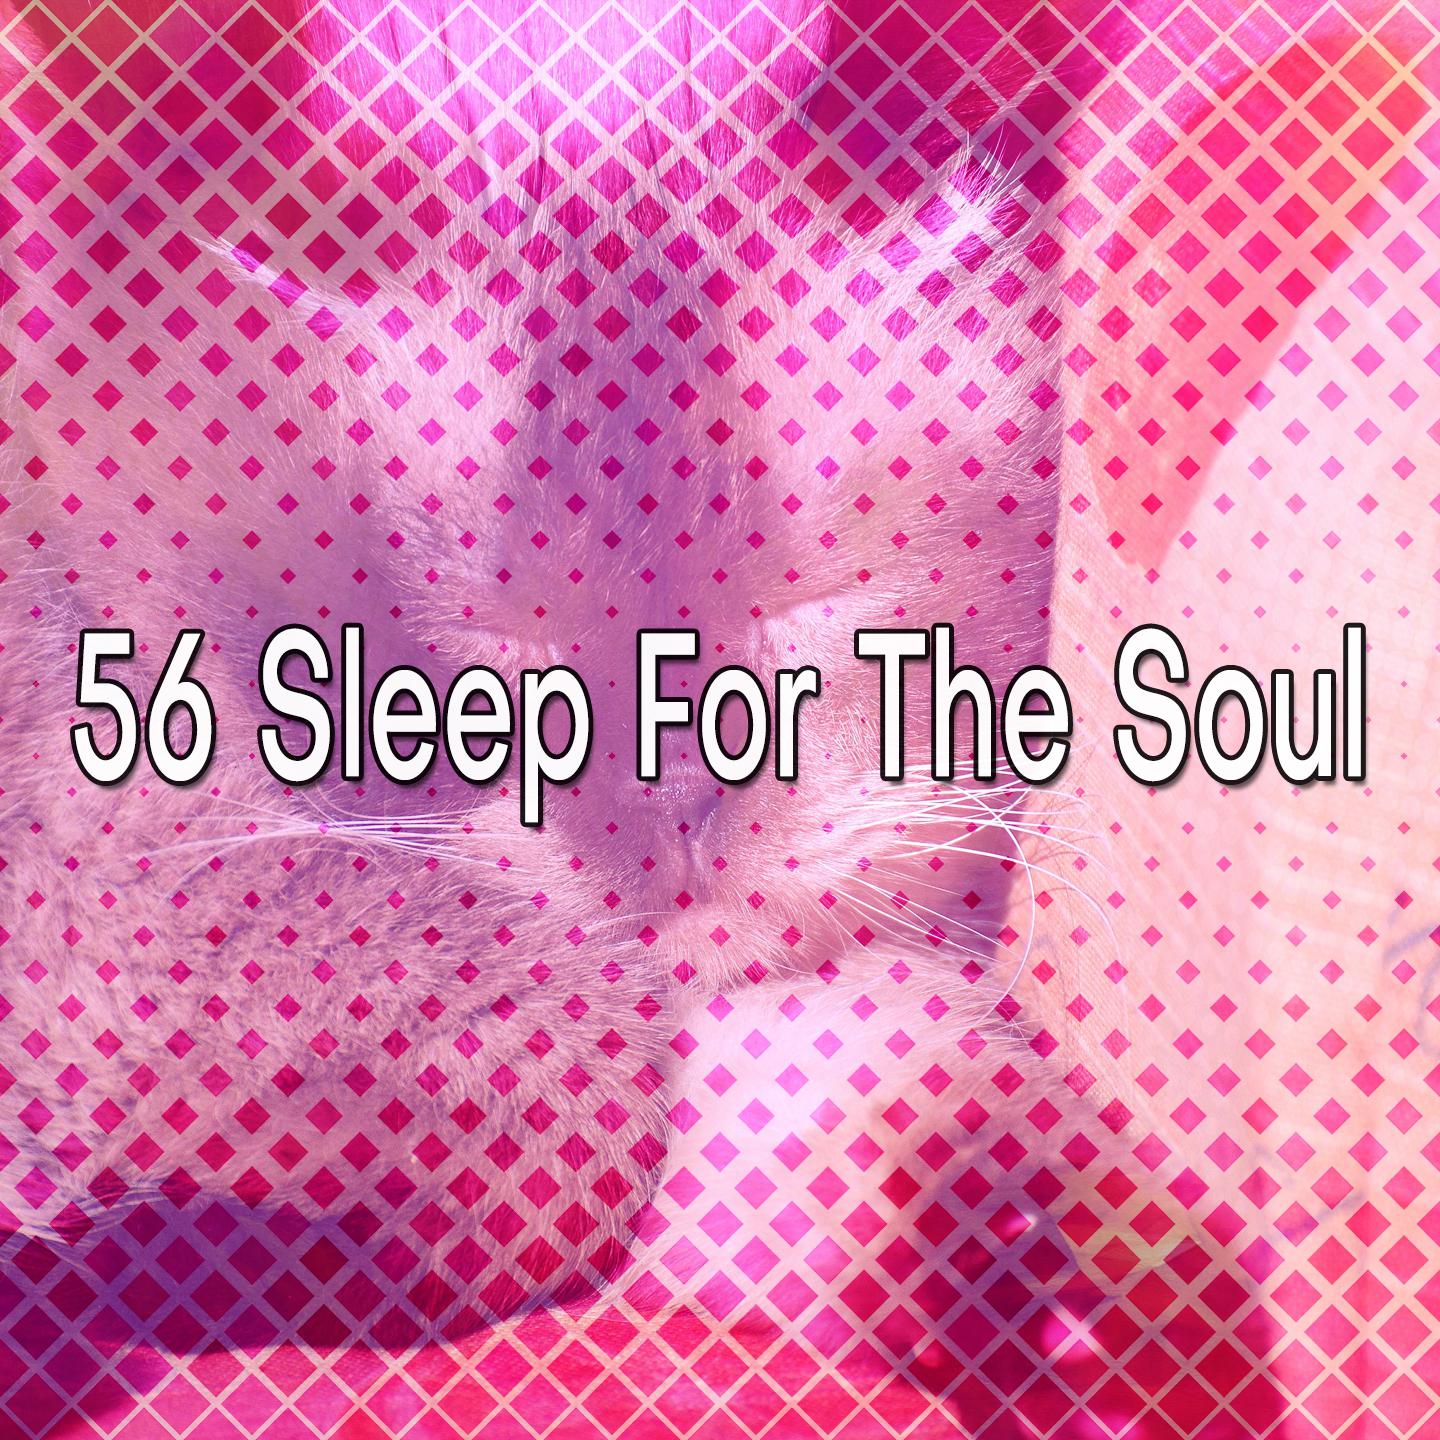 56 Sleep For The Soul